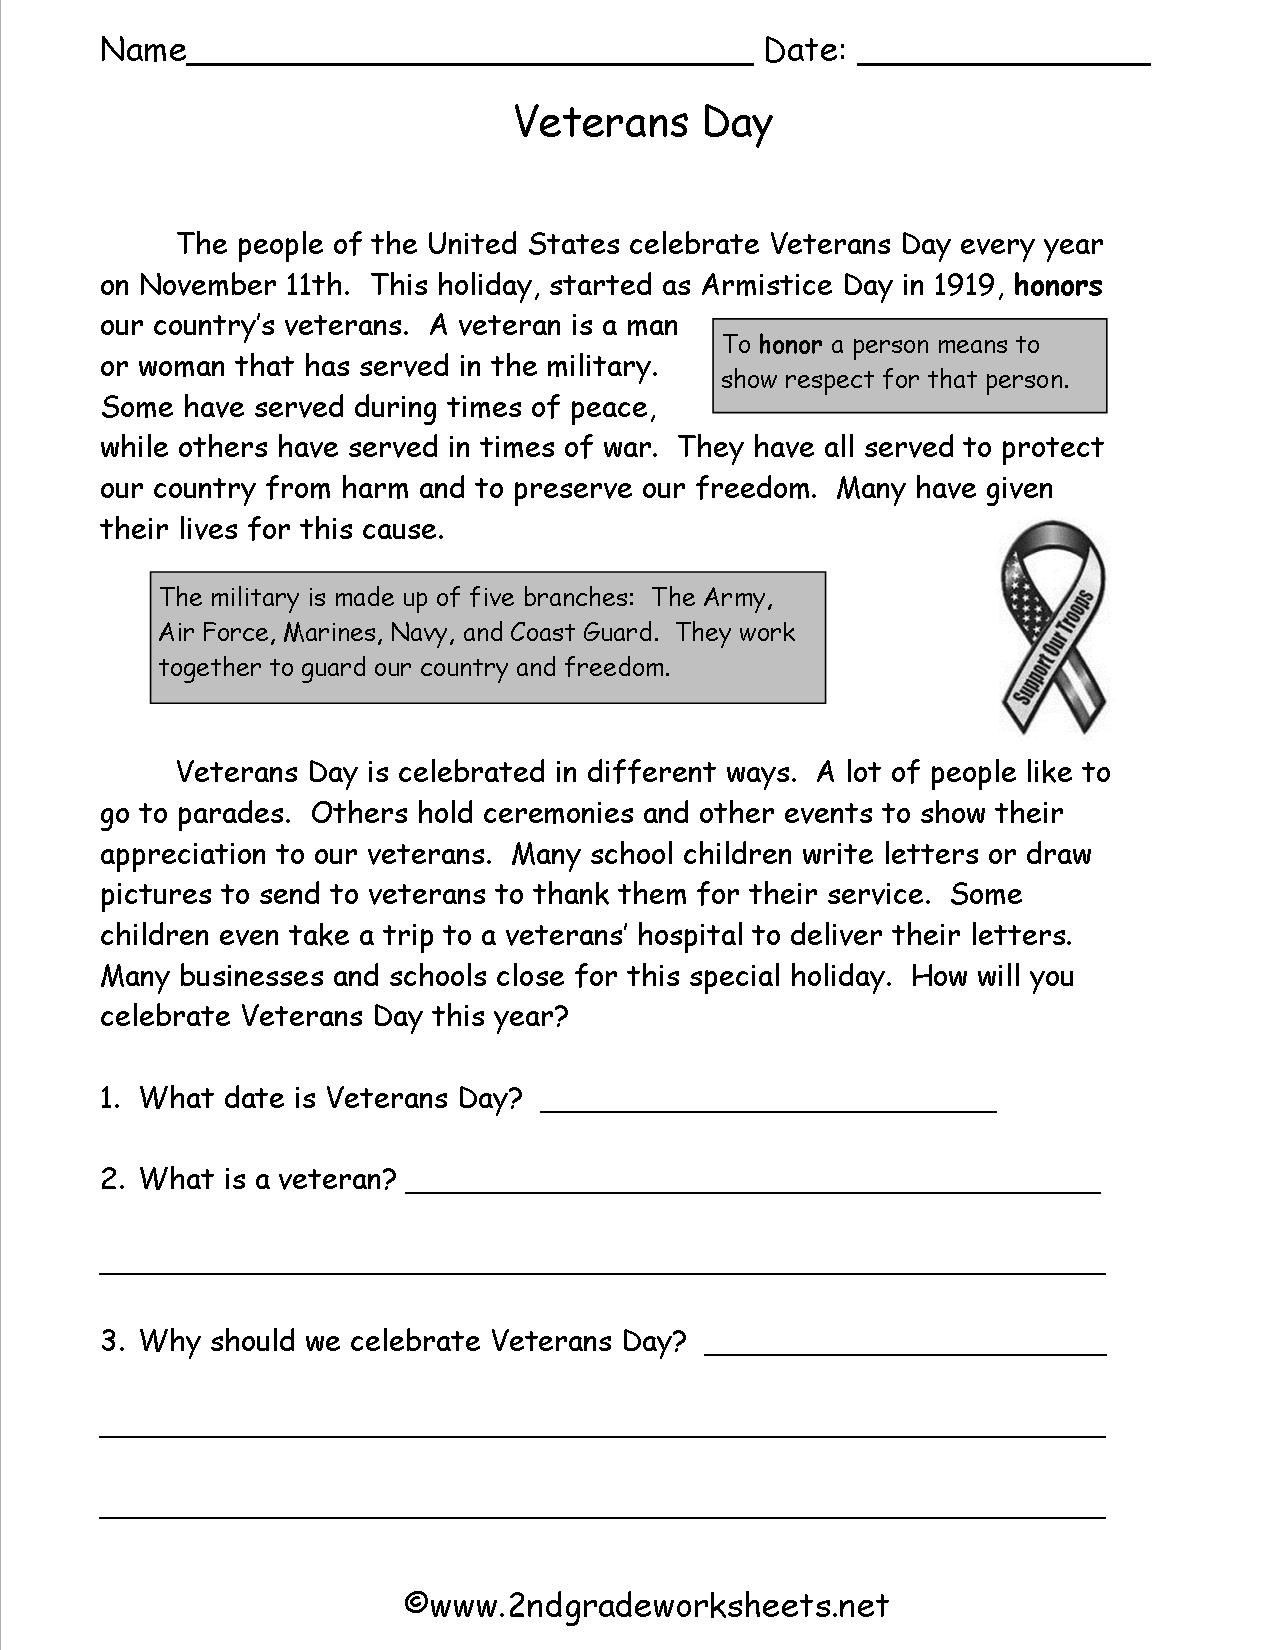 Veterans Day Letter Template - Veterans Day Worksheets